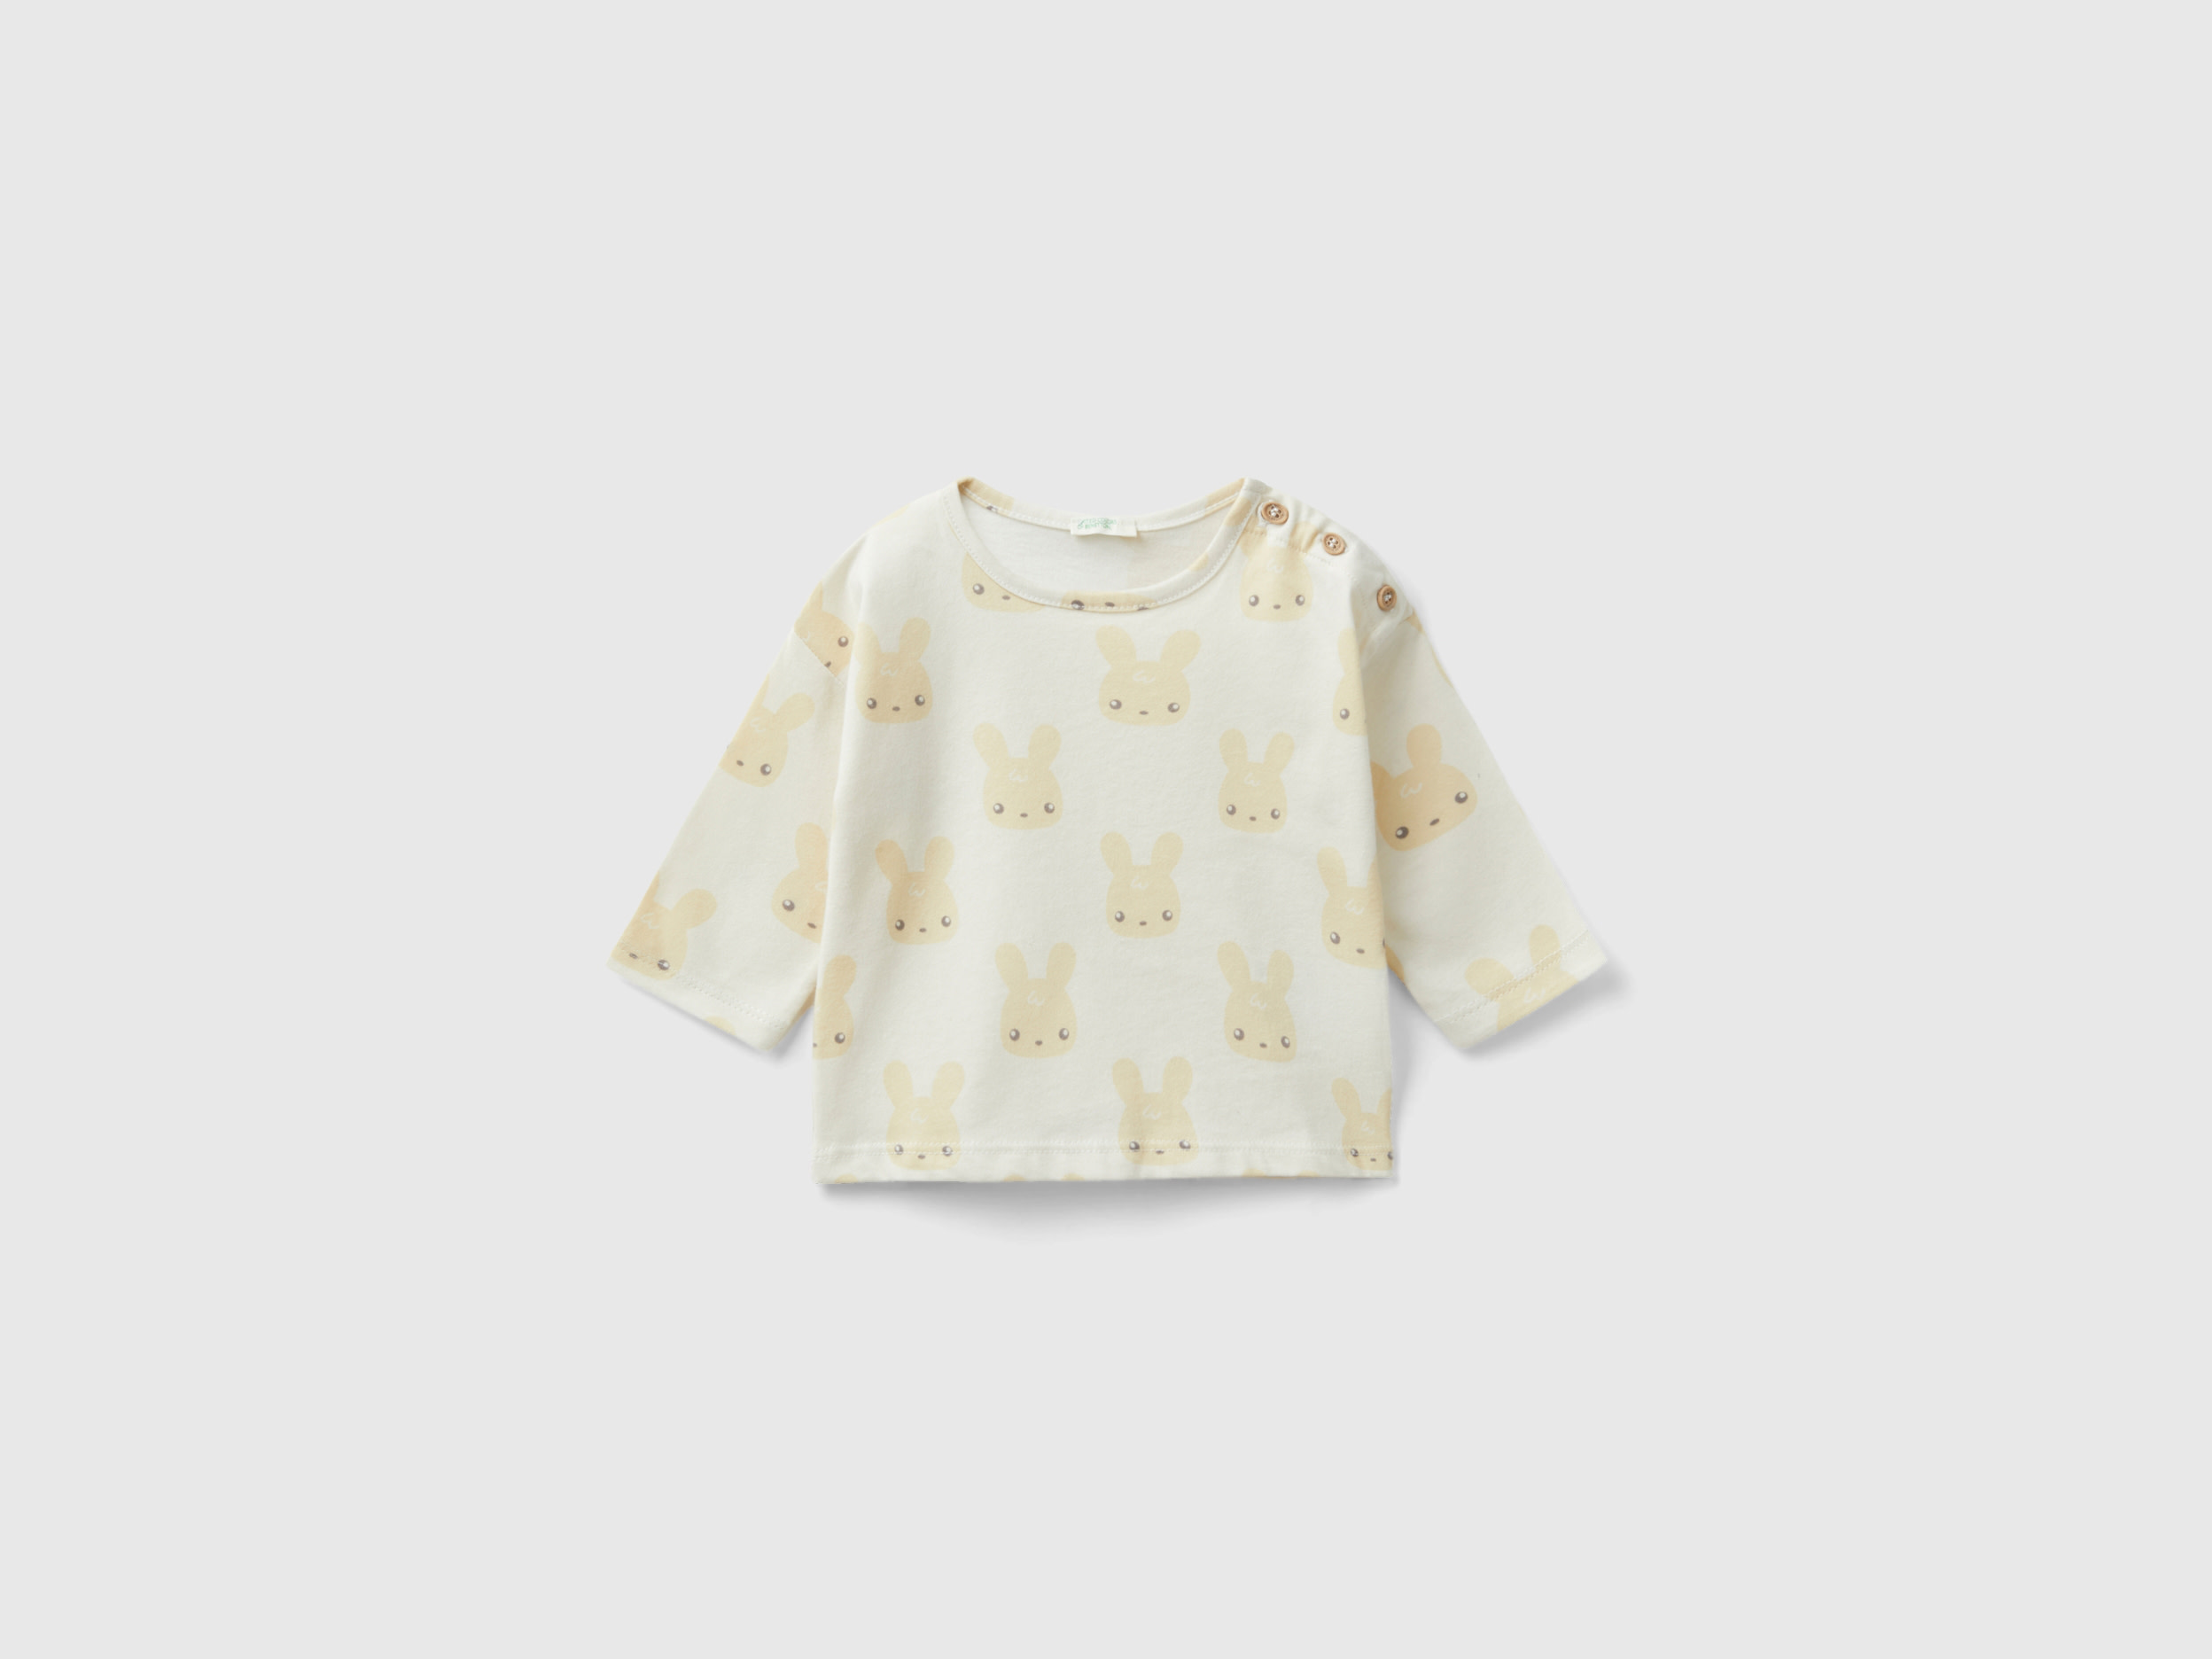 Benetton, Printed T-shirt In Warm Cotton, size 0-1, Beige, Kids